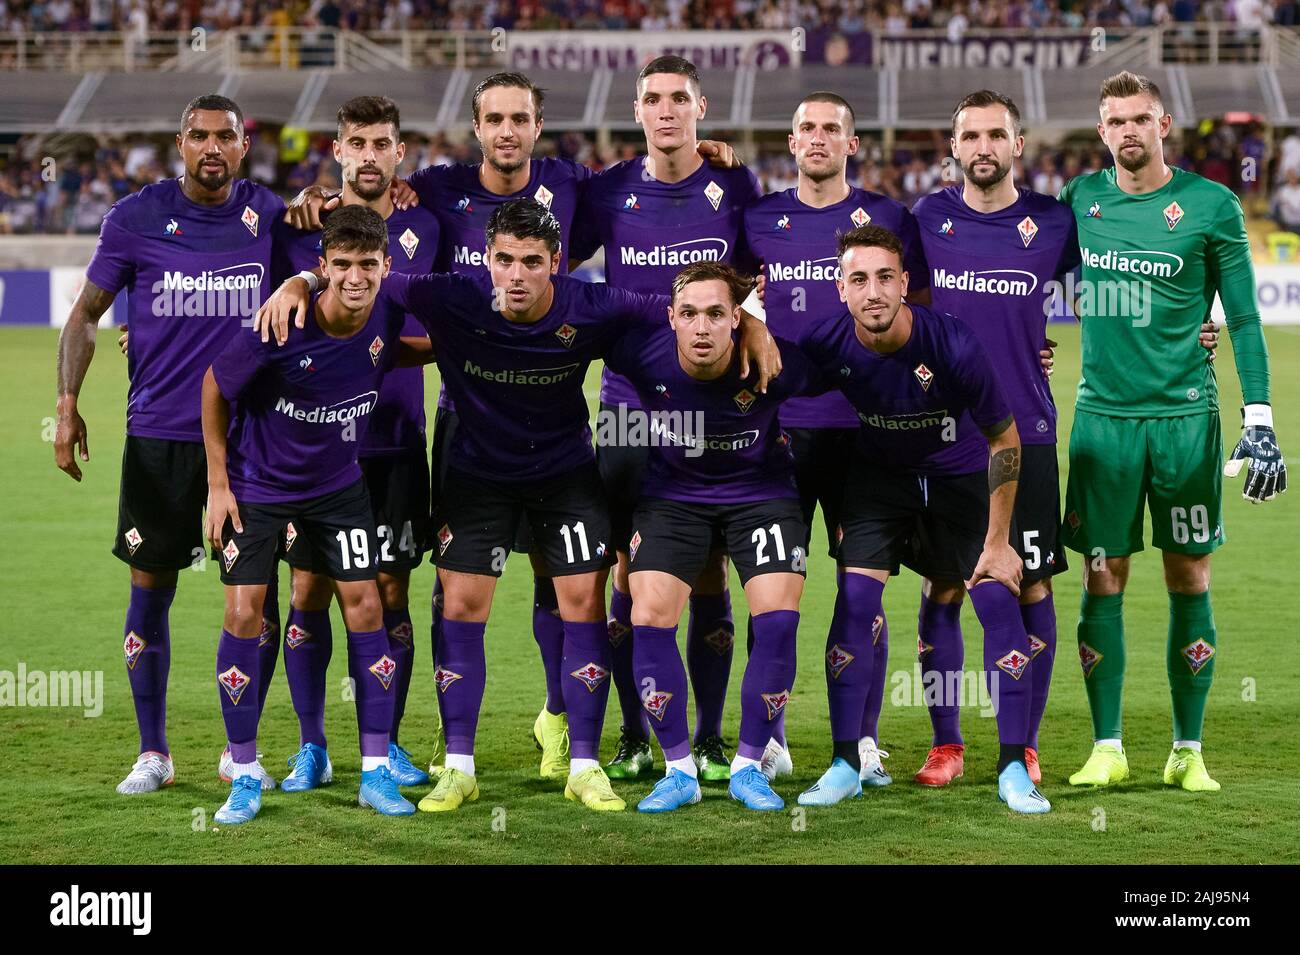 Fiorentina team immagini e fotografie stock ad alta risoluzione - Alamy